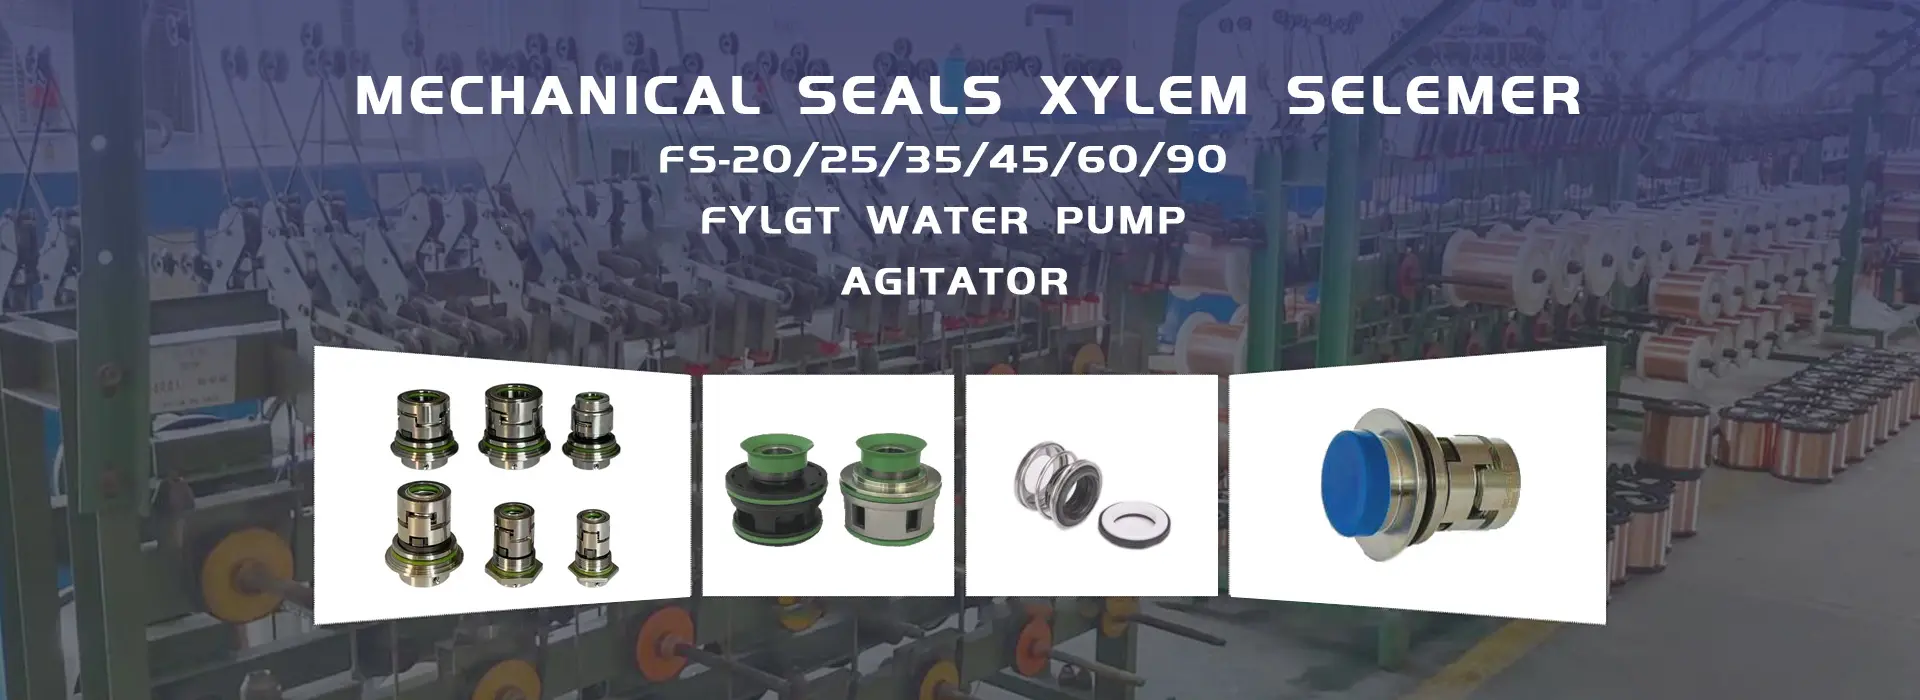 Standard Mechanical Seals Supplier